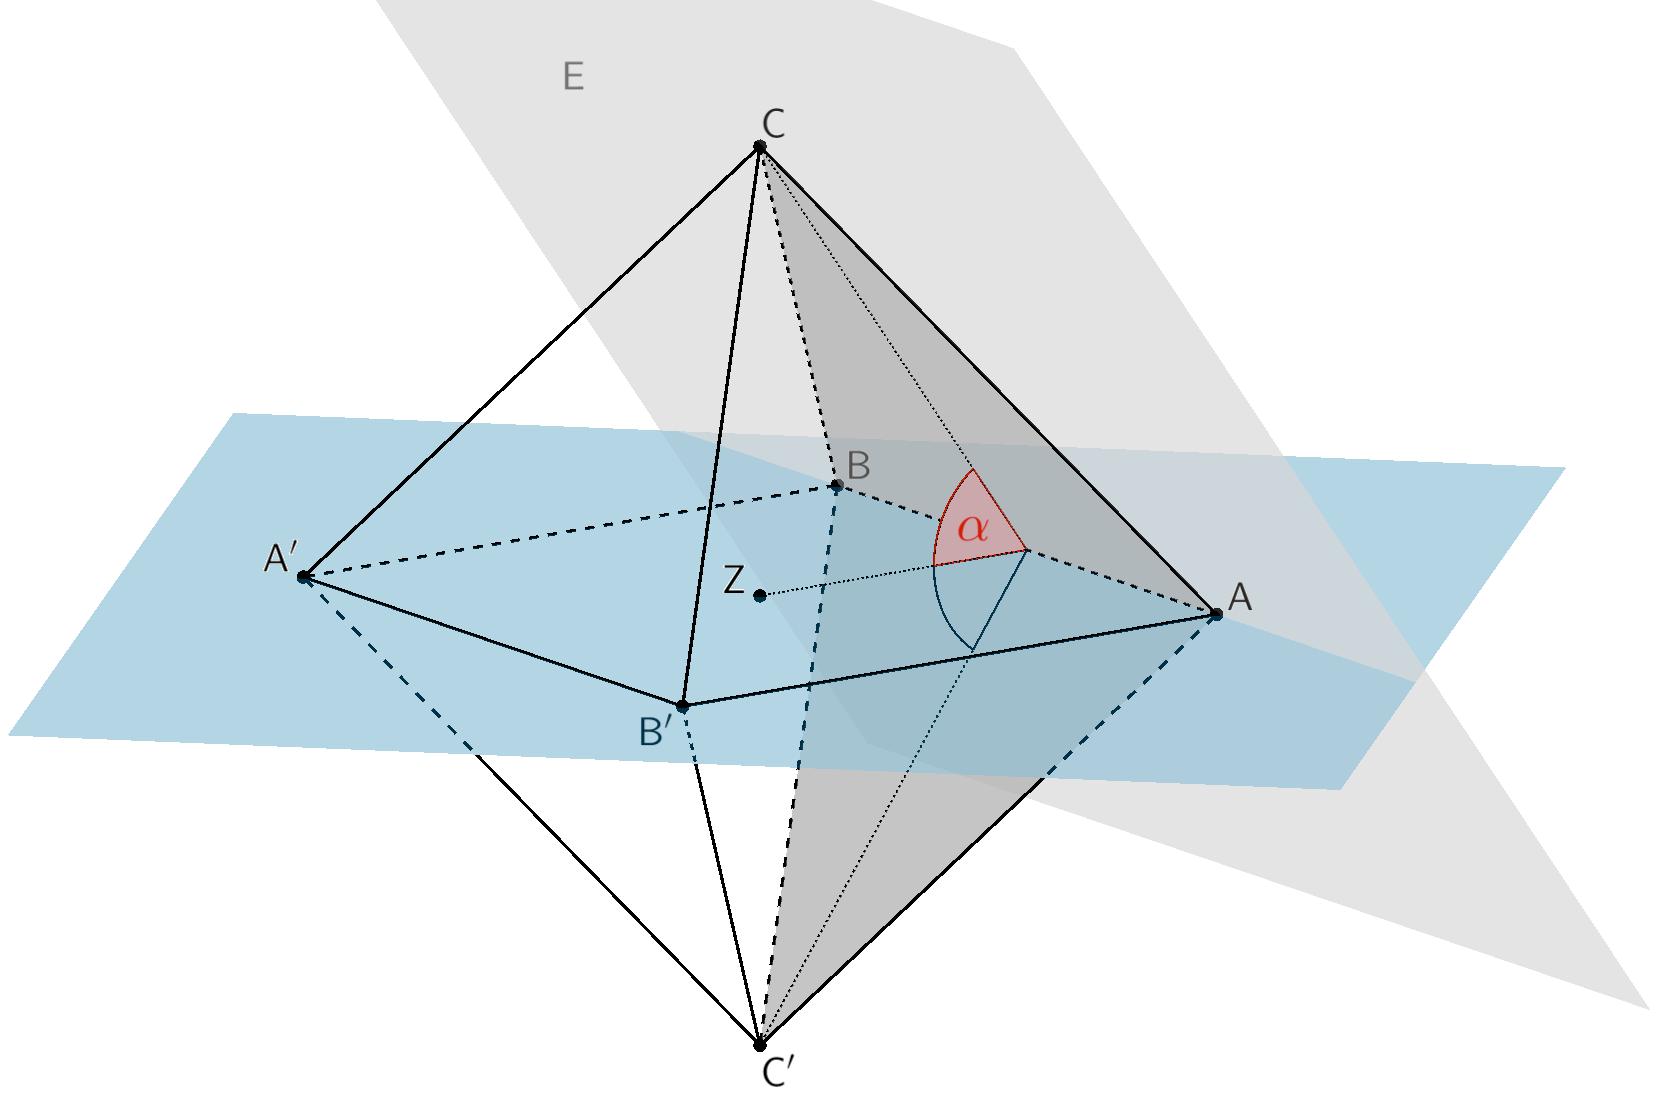 Neigungswinkel α der Ebene E (Dreieck ABC) gegen die Ebene, in der die Punkte A, B und Z liegen 